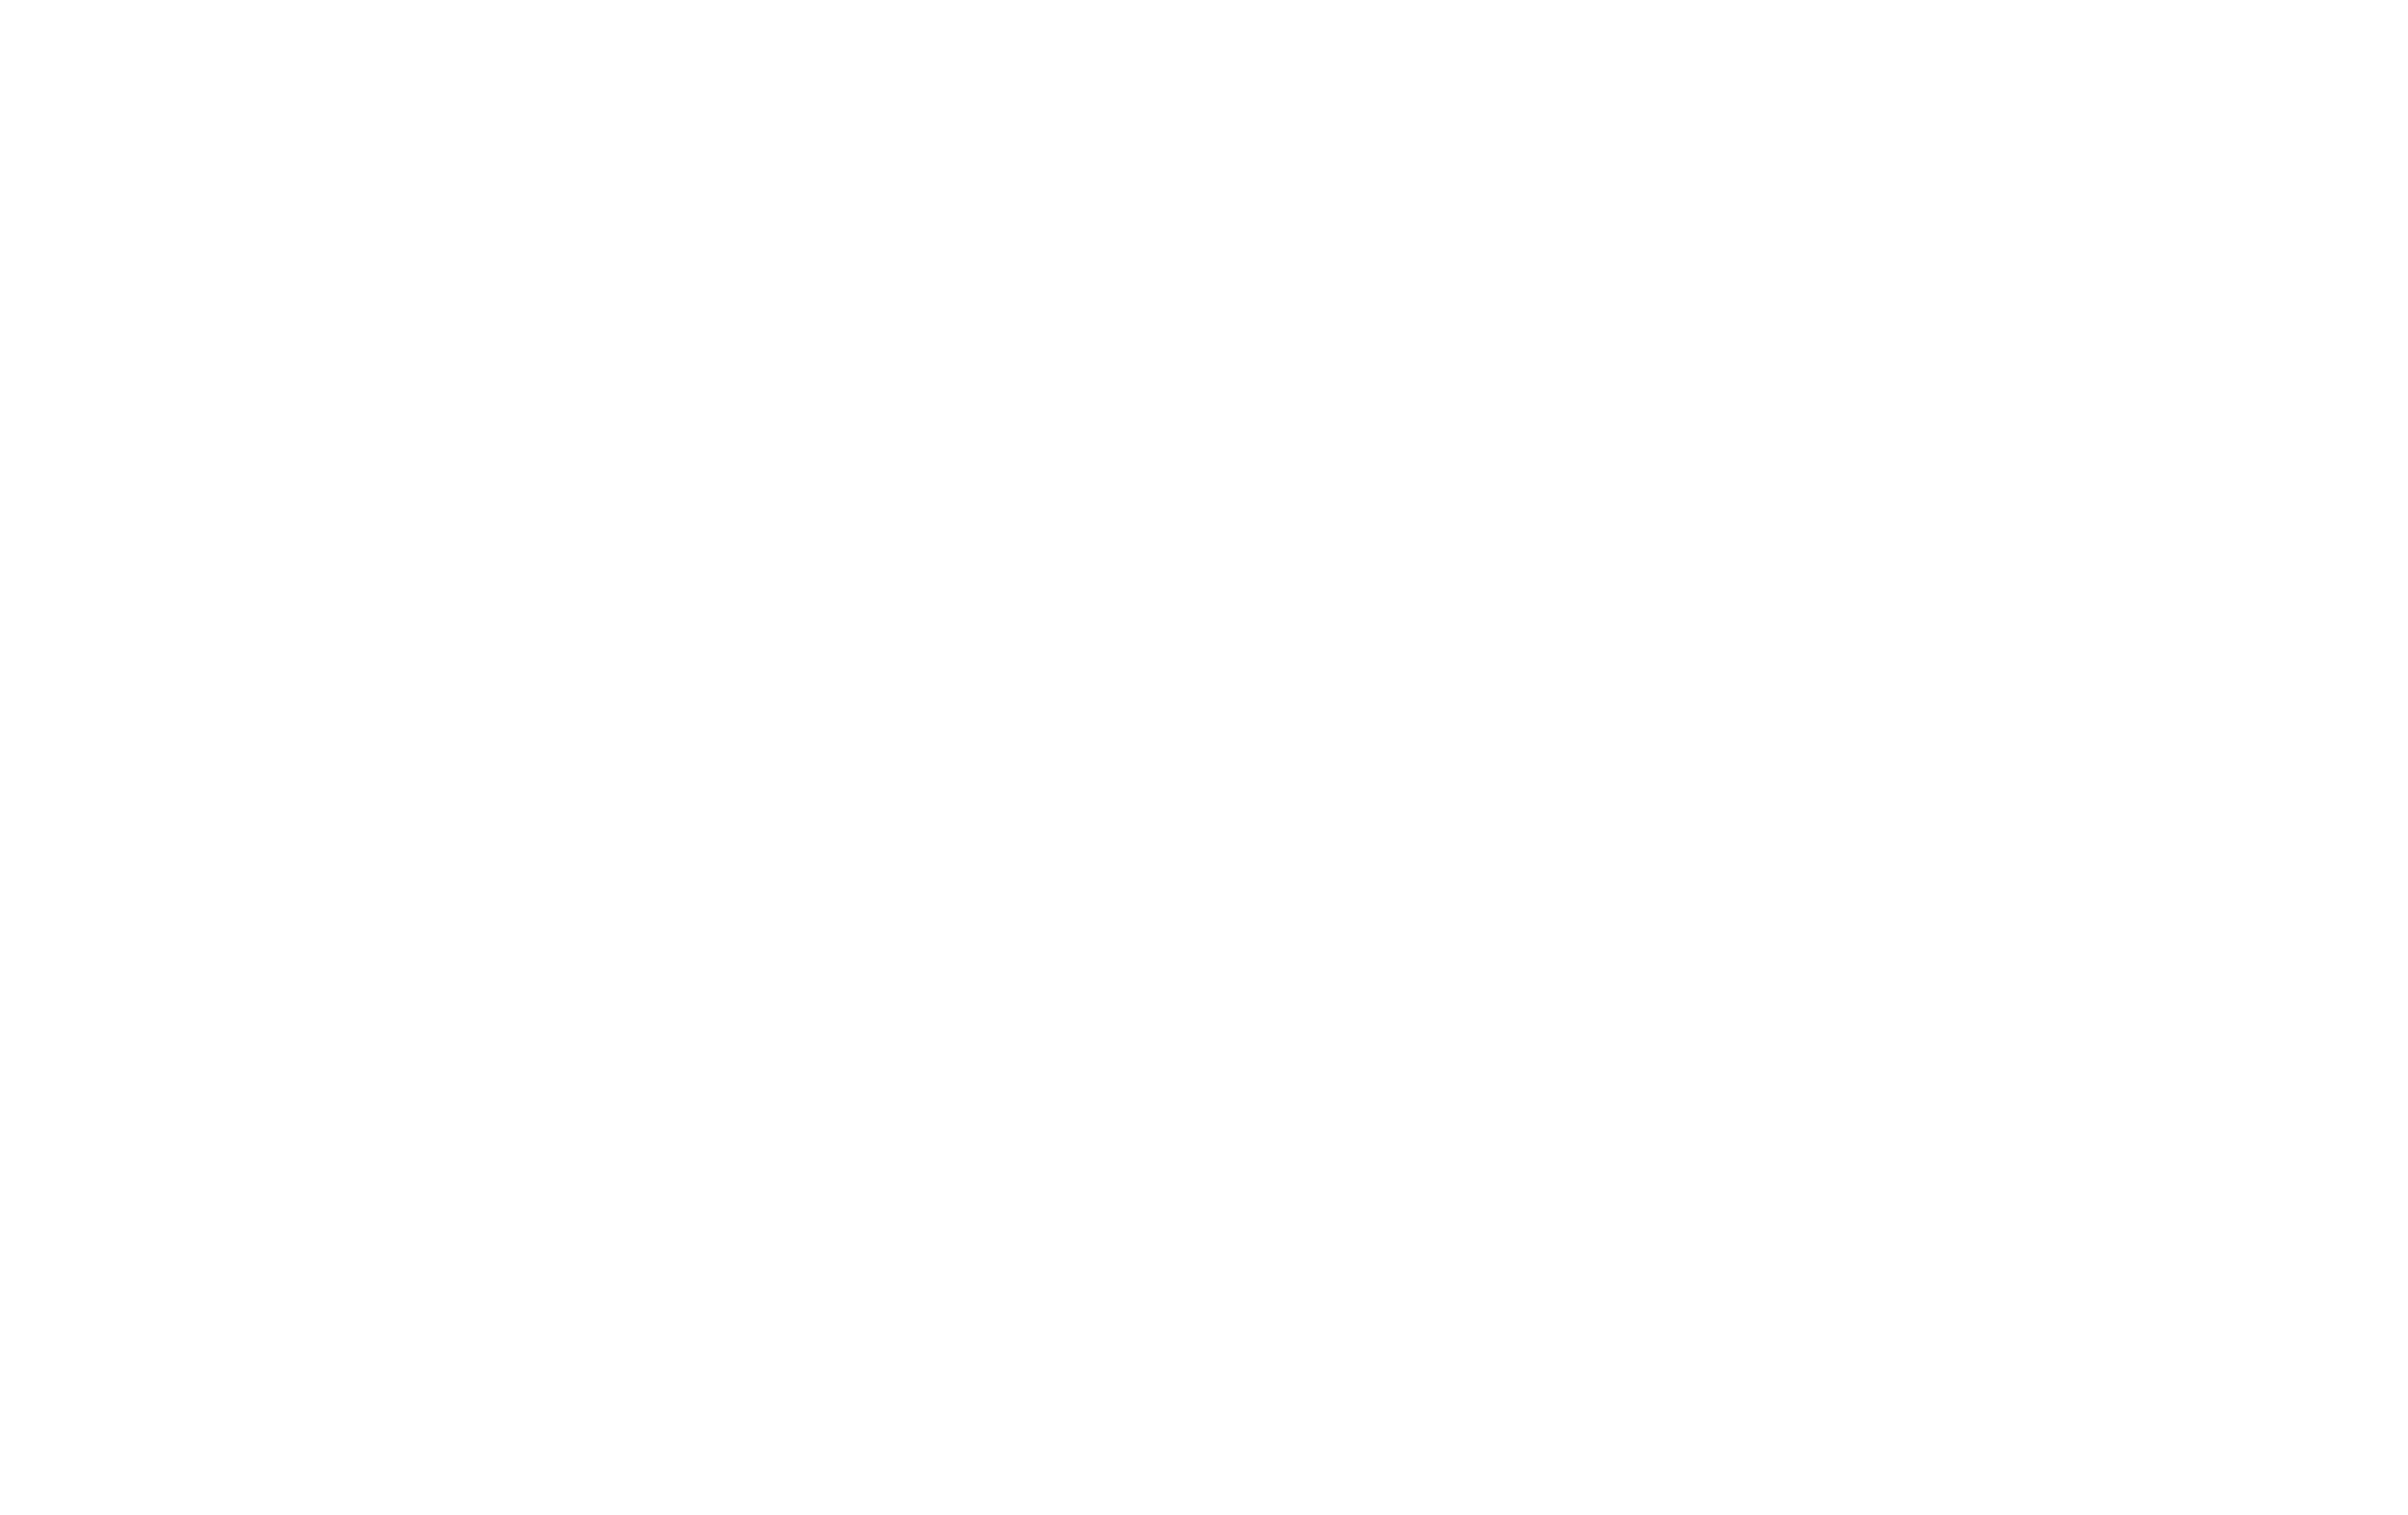 Ward De Bock